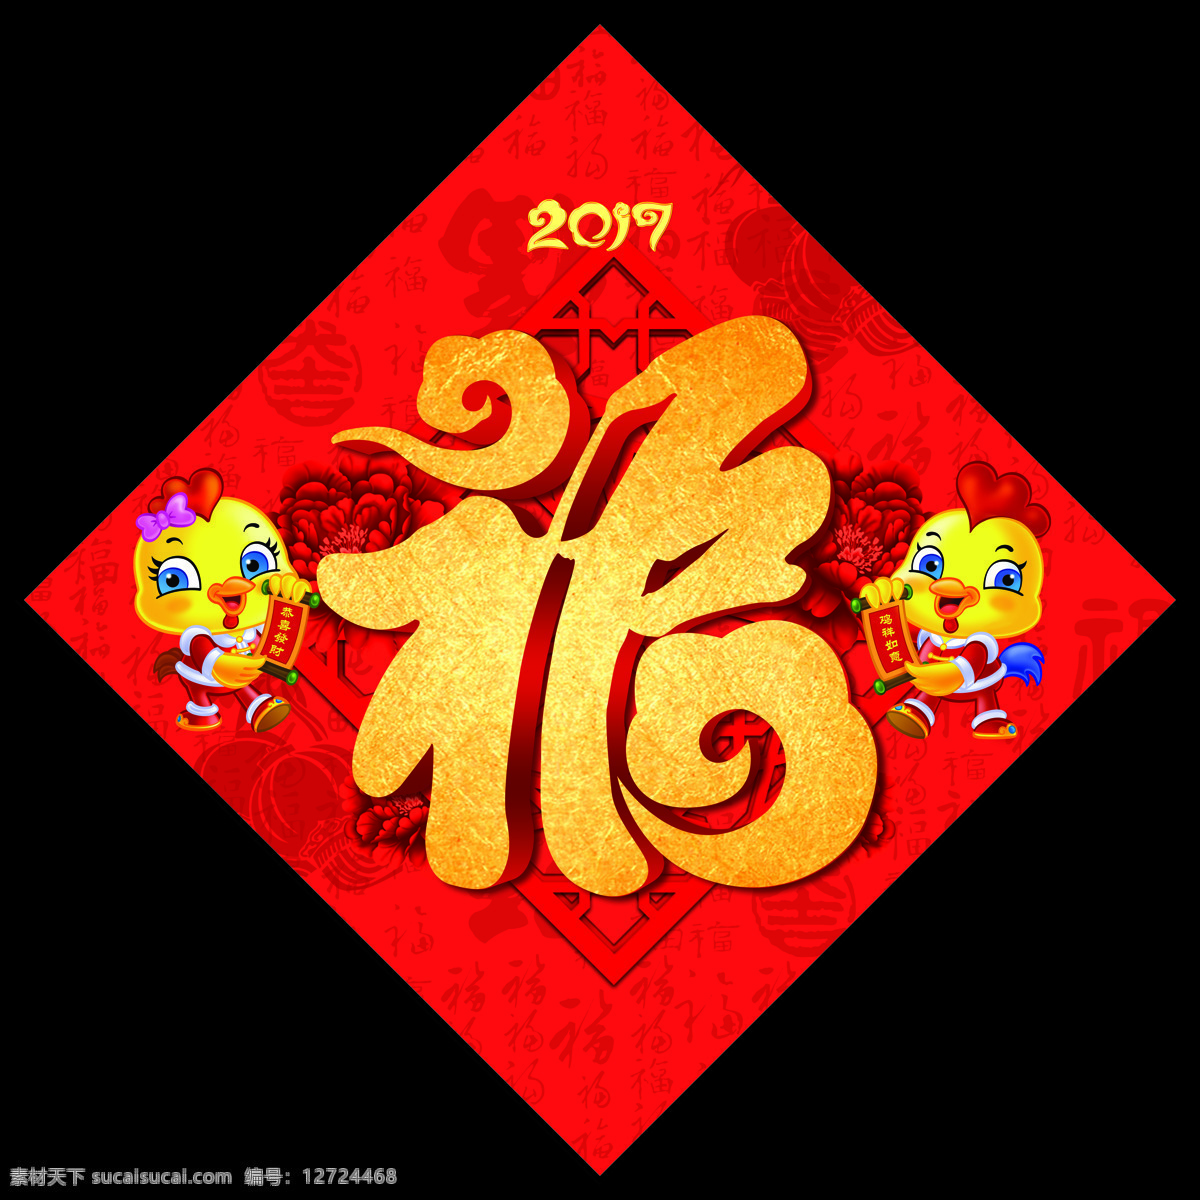 鸡年福字 2017年 福 福字 福运 贴福字 鸡年 新年 贺新年 对联 数字 红纸 贴画 字体 字体设计 节日 文化艺术 节日庆祝